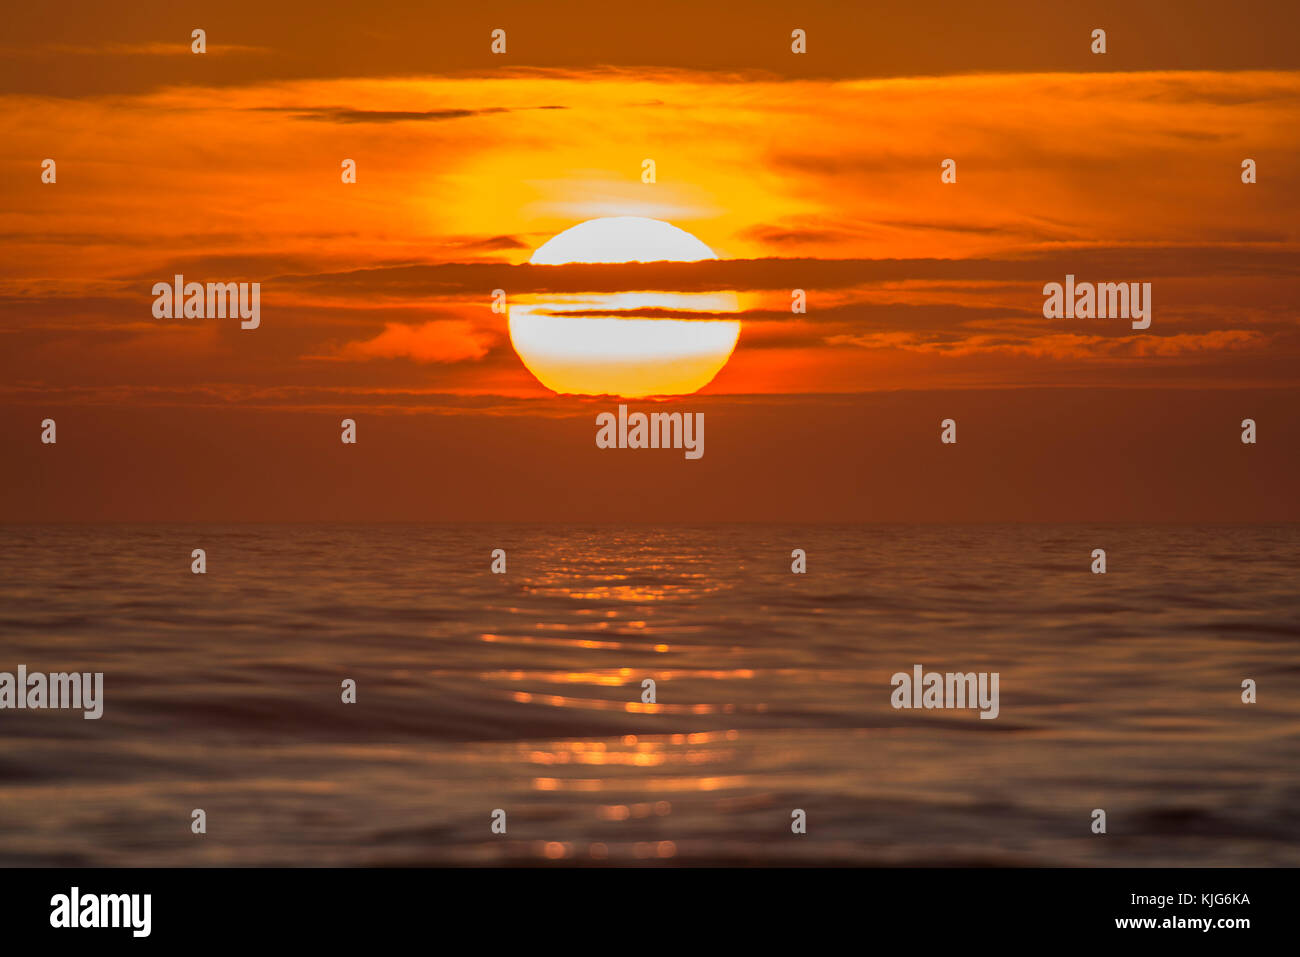 Sonnenuntergang über der Nordsee, Nordseeküste bei Hirtshals, Regione Nordjylland, Jütland, Dänemark, Europa Foto Stock